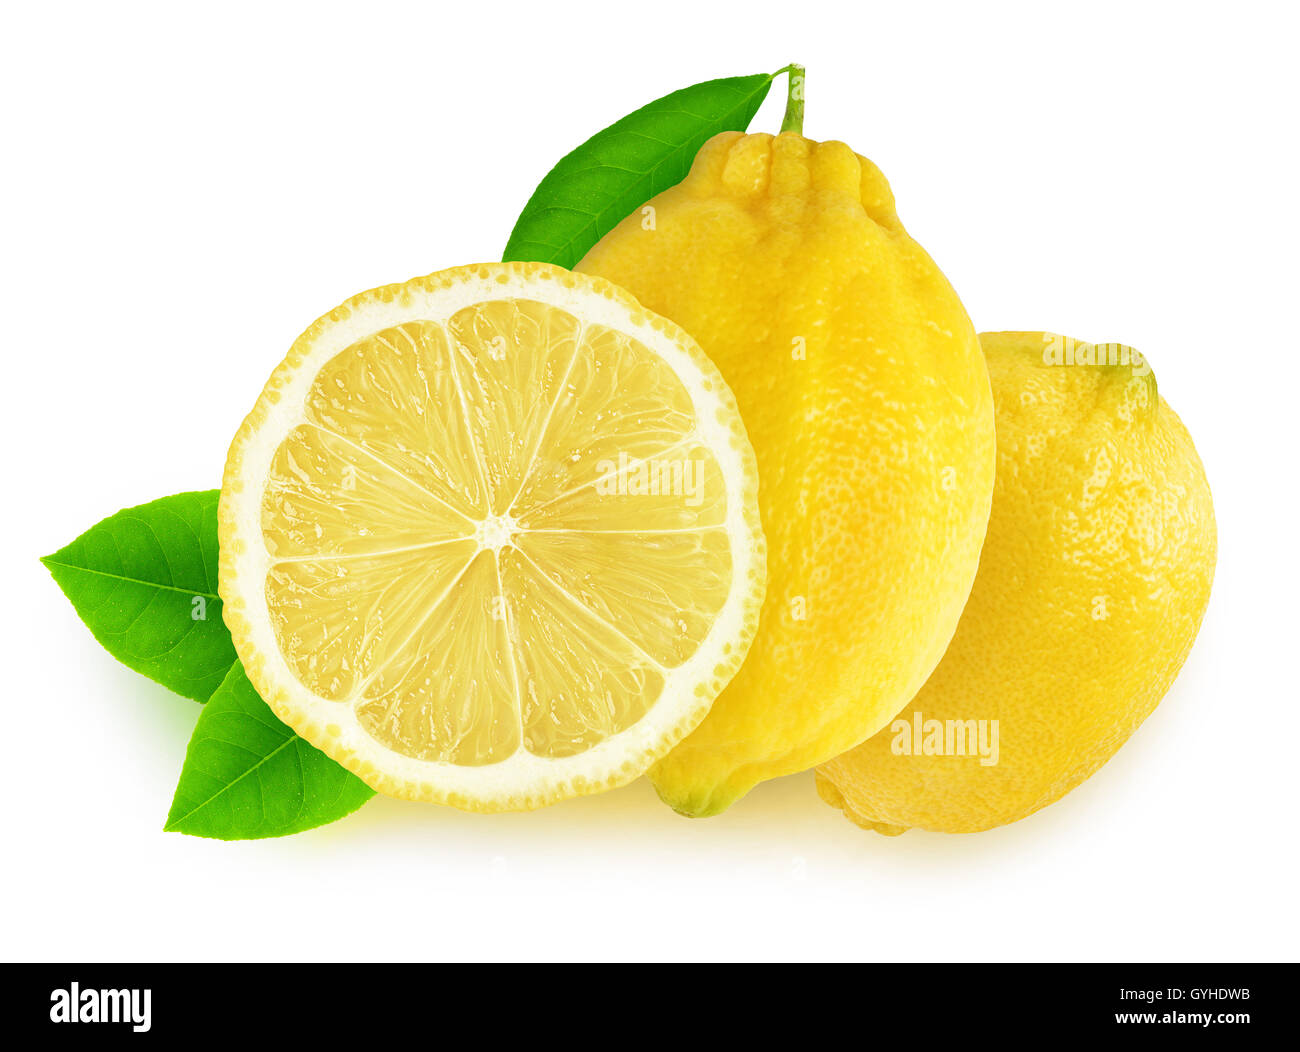 Citrons isolés. Couper les fruits de citron isolé sur fond blanc avec clipping path Banque D'Images